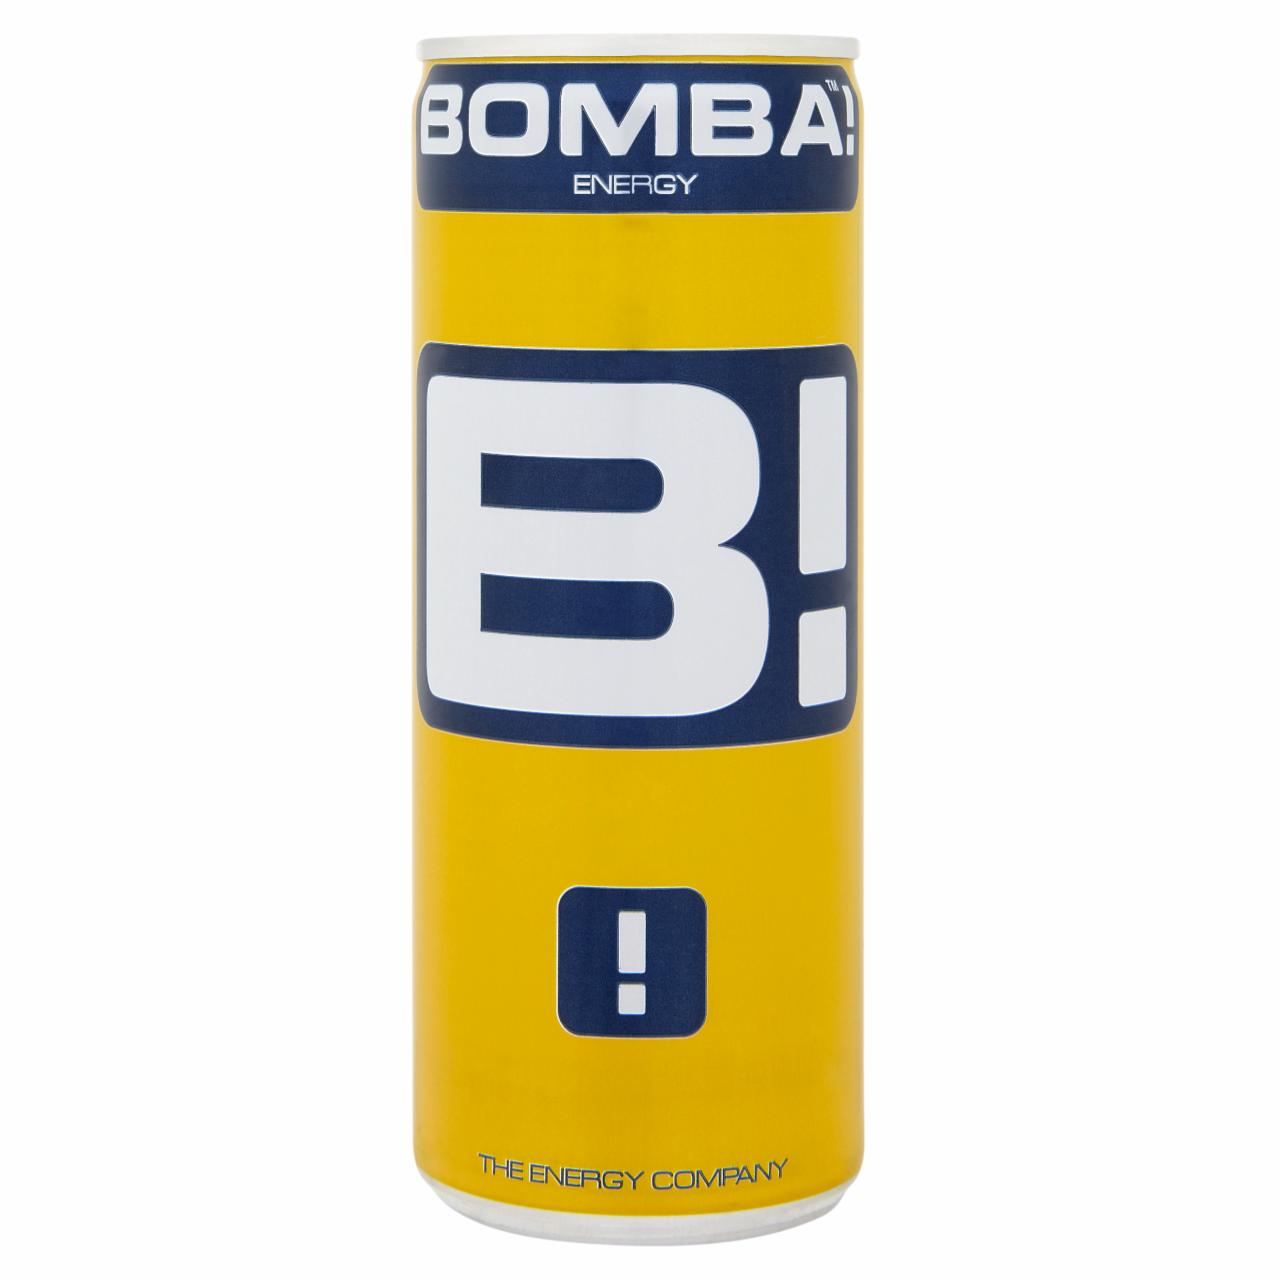 Képek - BOMBA! koffeintartalmú, tutti-frutti ízű szénsavas ital cukorral és édesítőszerrel 250 ml